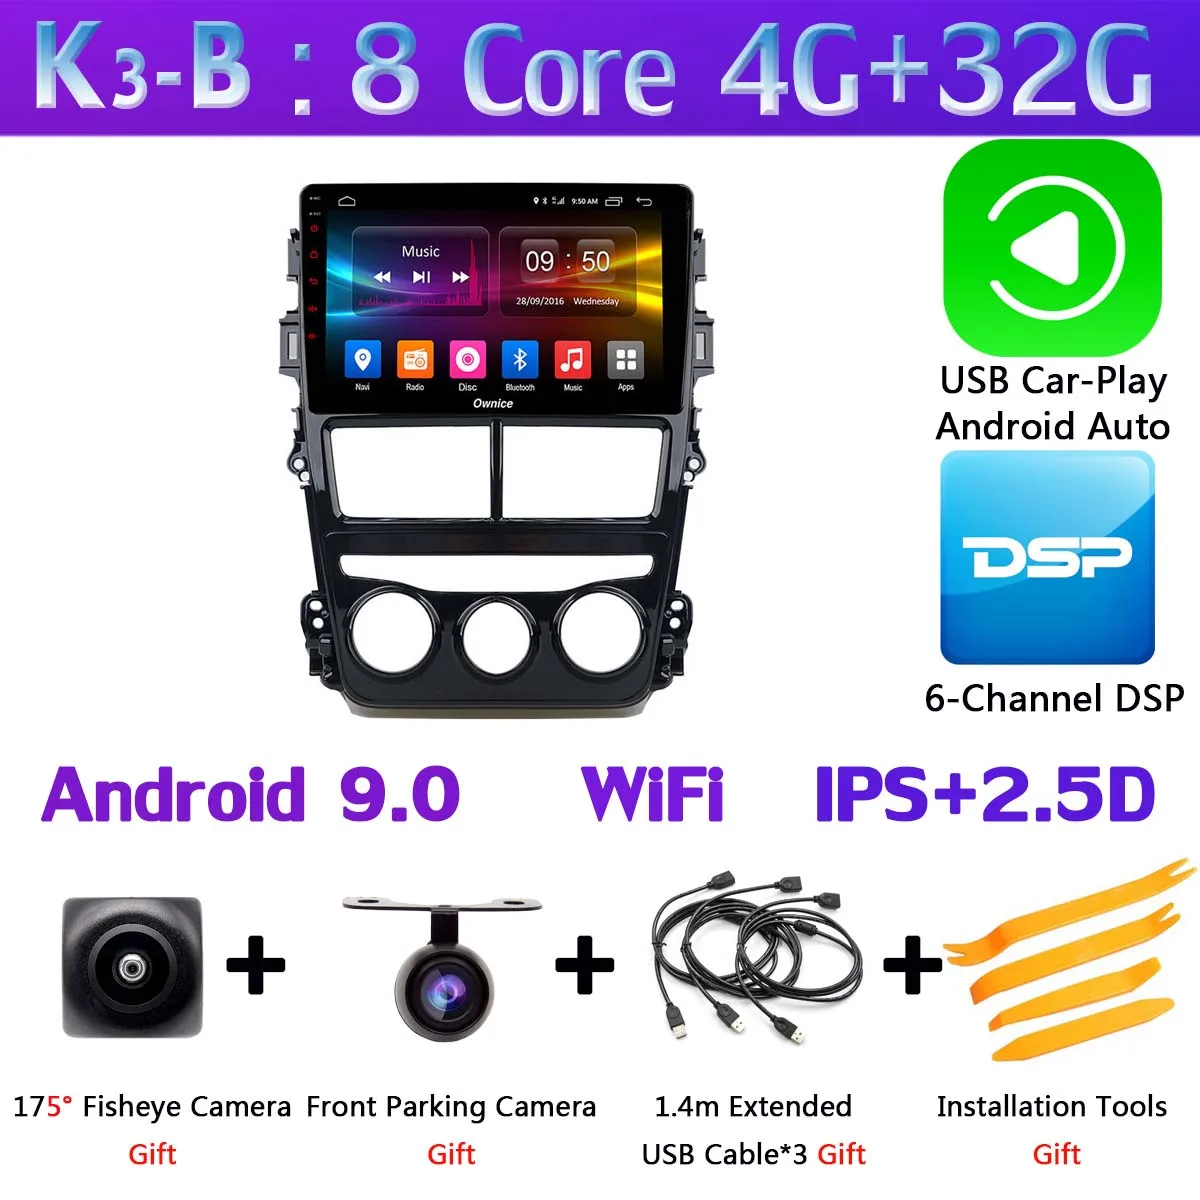 360 ° панорамная камера Android 9,0 4G+ 64G DSP CarPlay автомобильный мультимедийный плеер для Toyota Yaris, Vios MT на gps радио - Цвет: K3-B-CarPlay